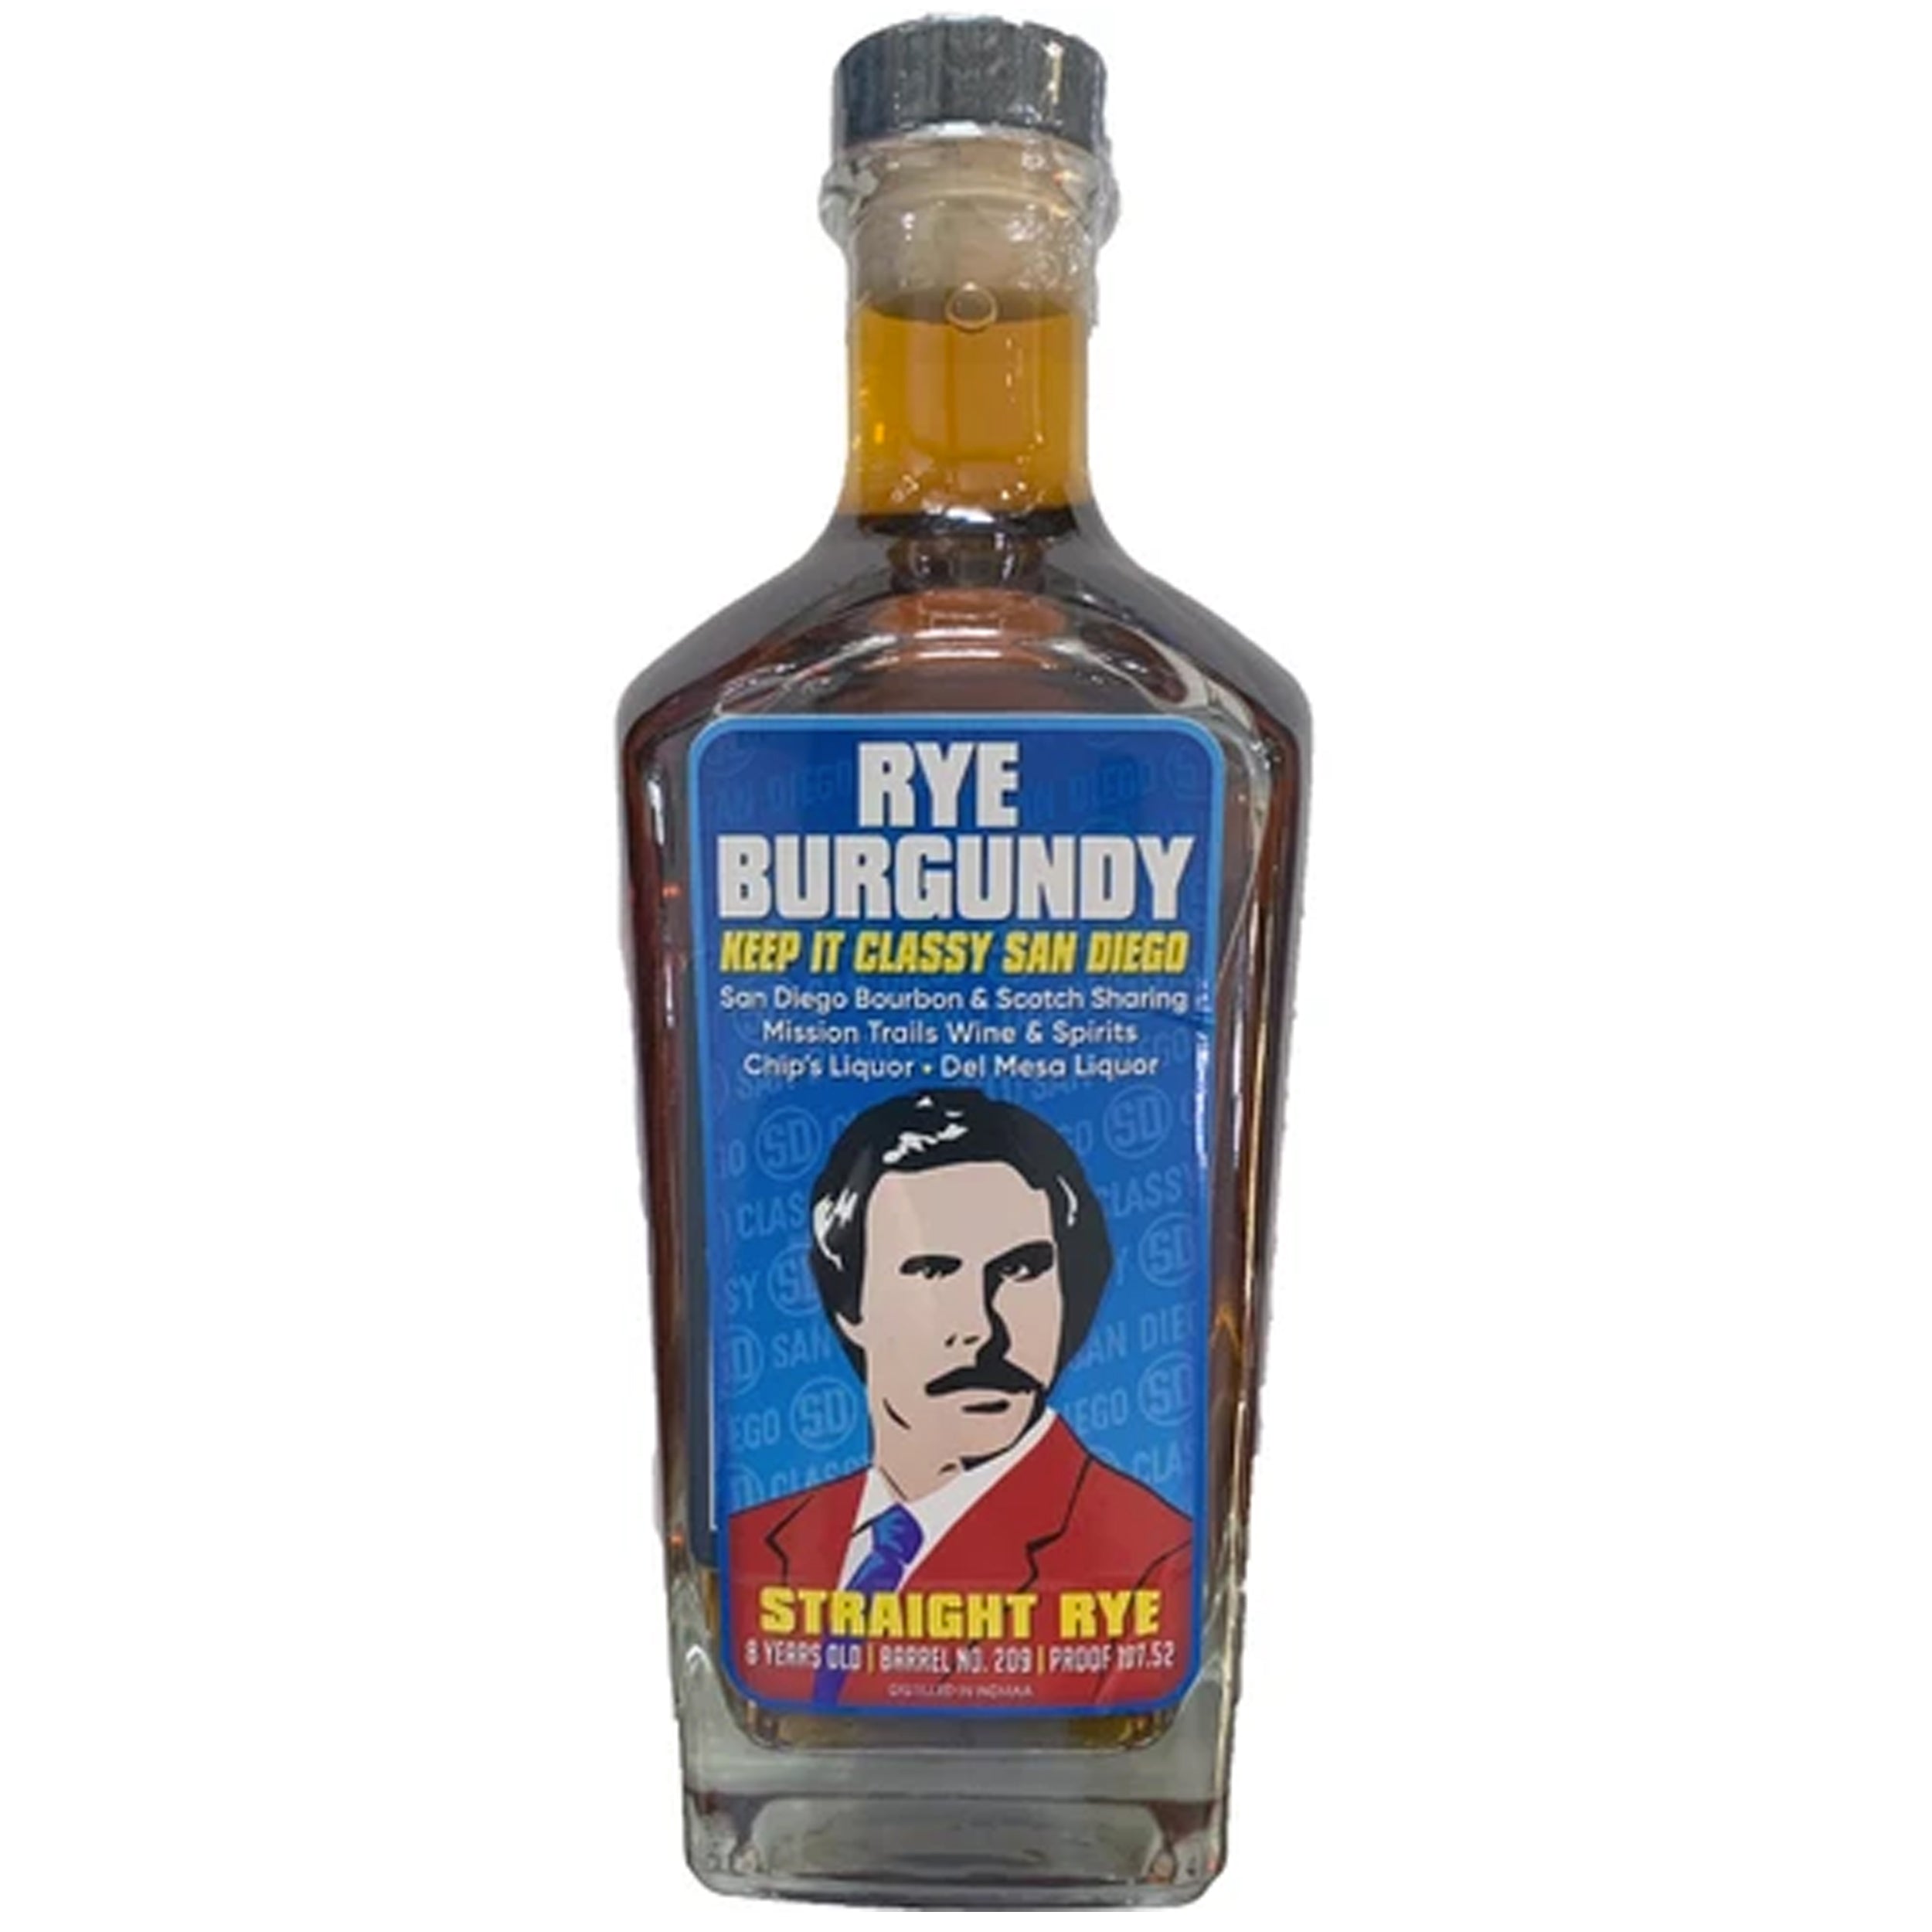 Nashville Barrel Company - Single Barrel Rye Private Selection 'Rye Burgundy'